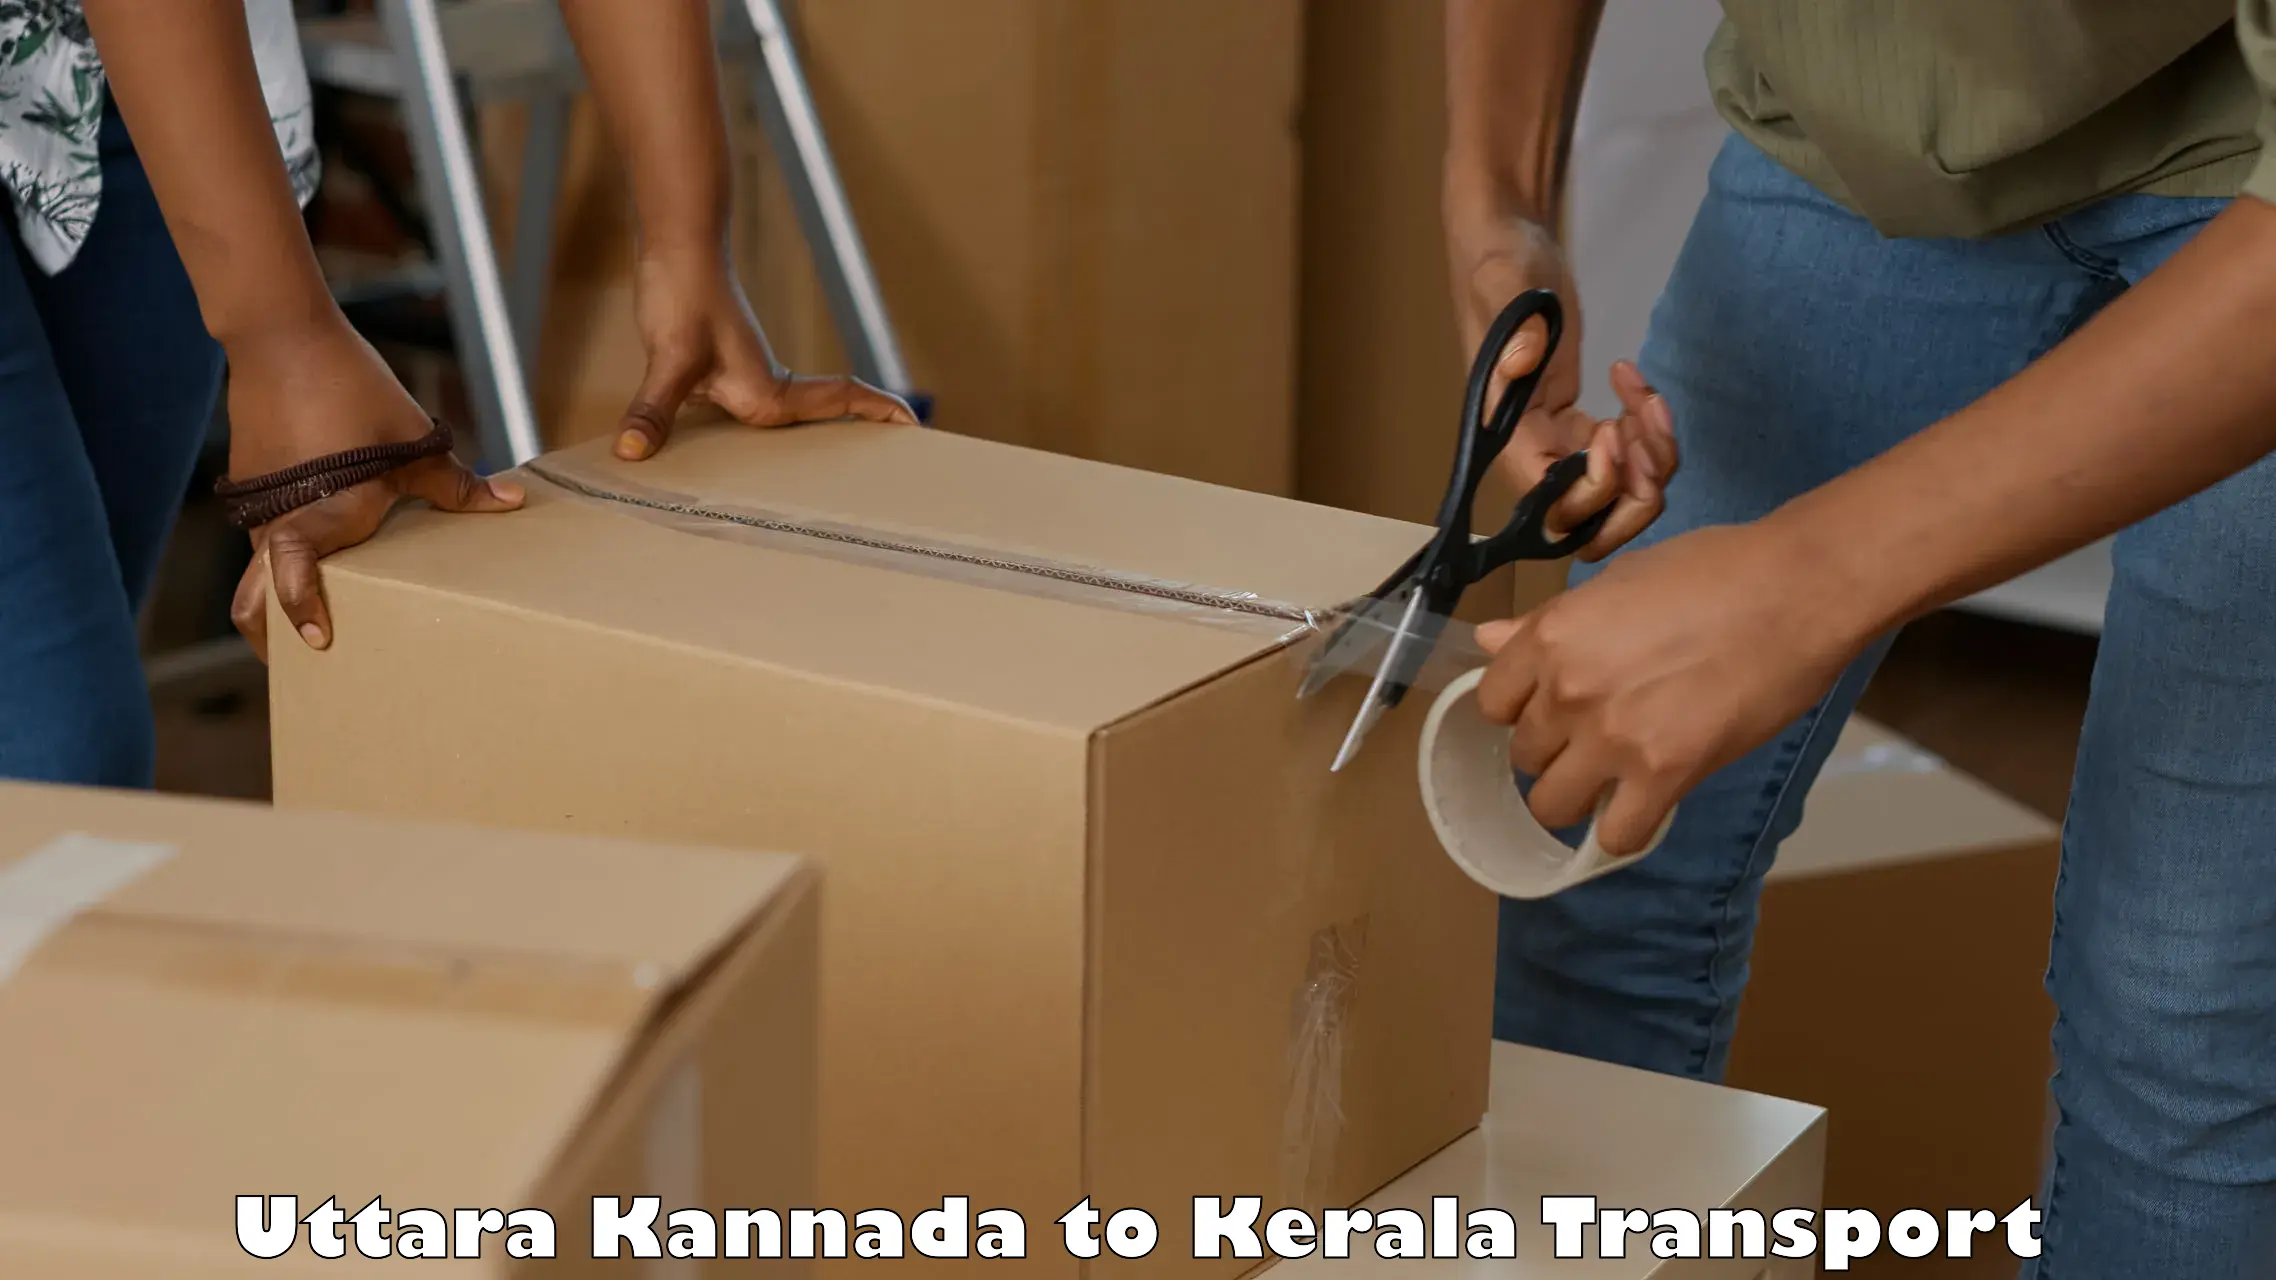 Parcel transport services Uttara Kannada to Kerala